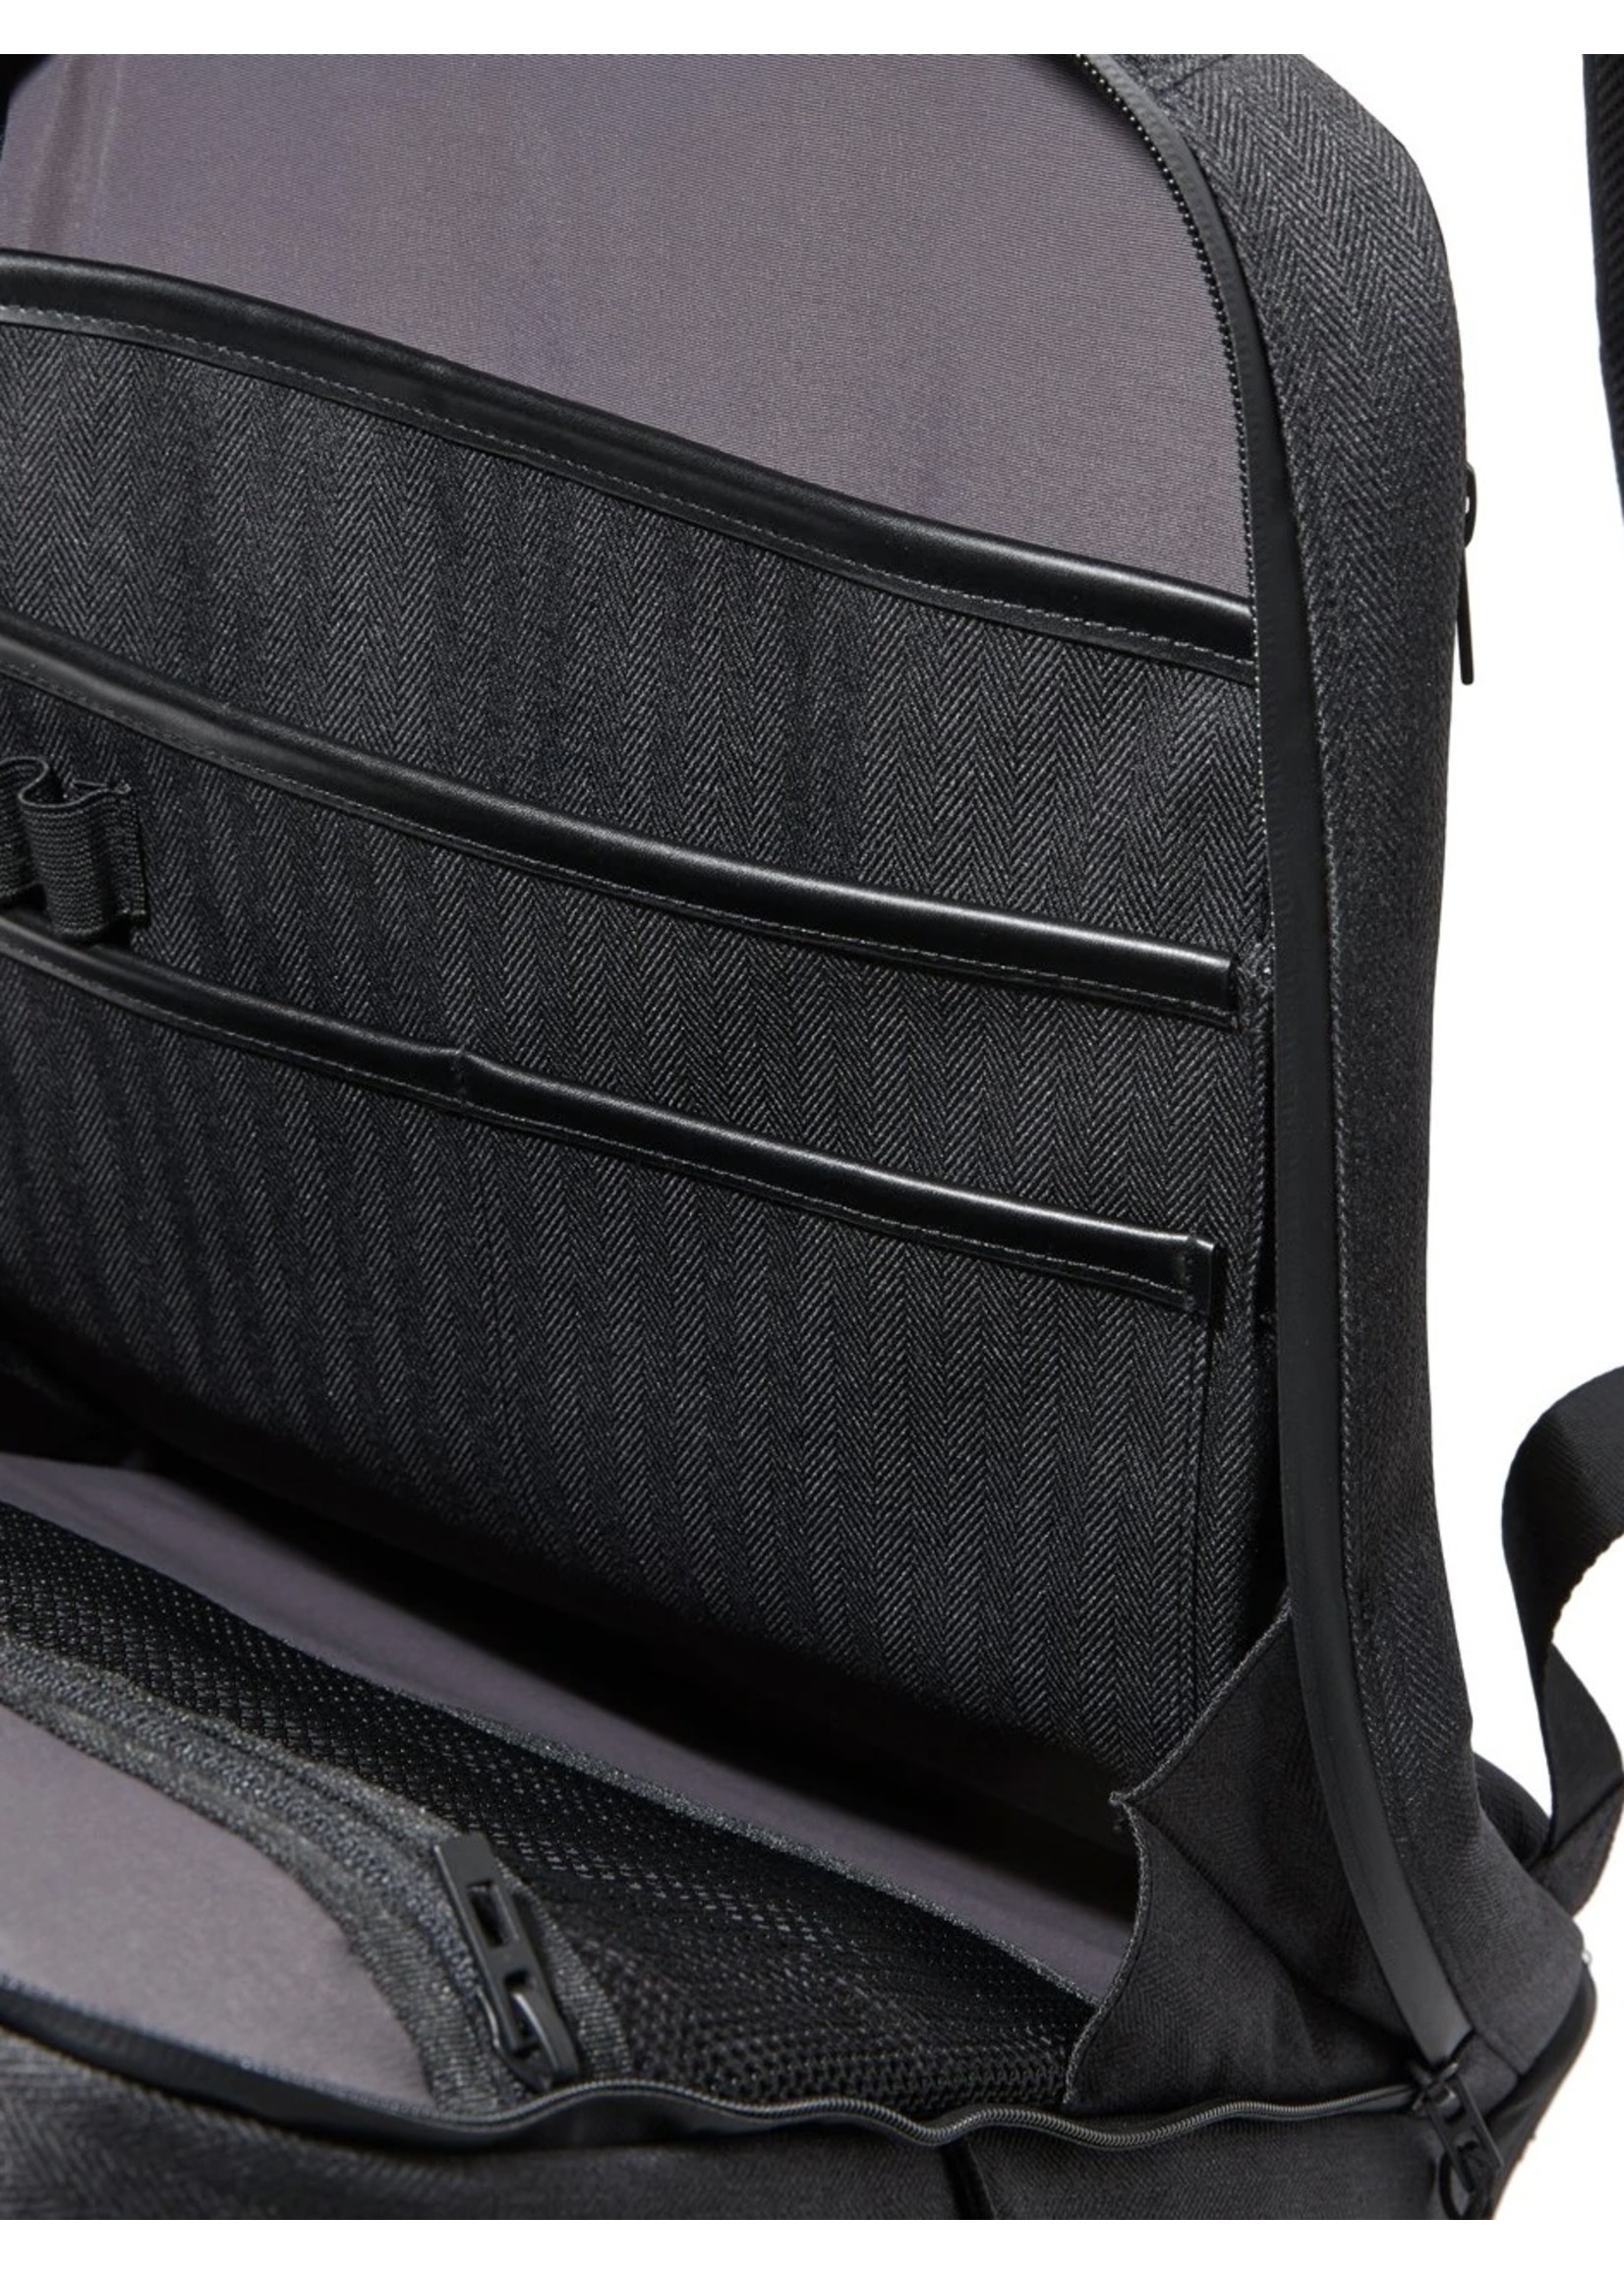 PUBLIC REC Pro Pack Plus Backpack w/ Laptop Compartment (Multiple Colors)